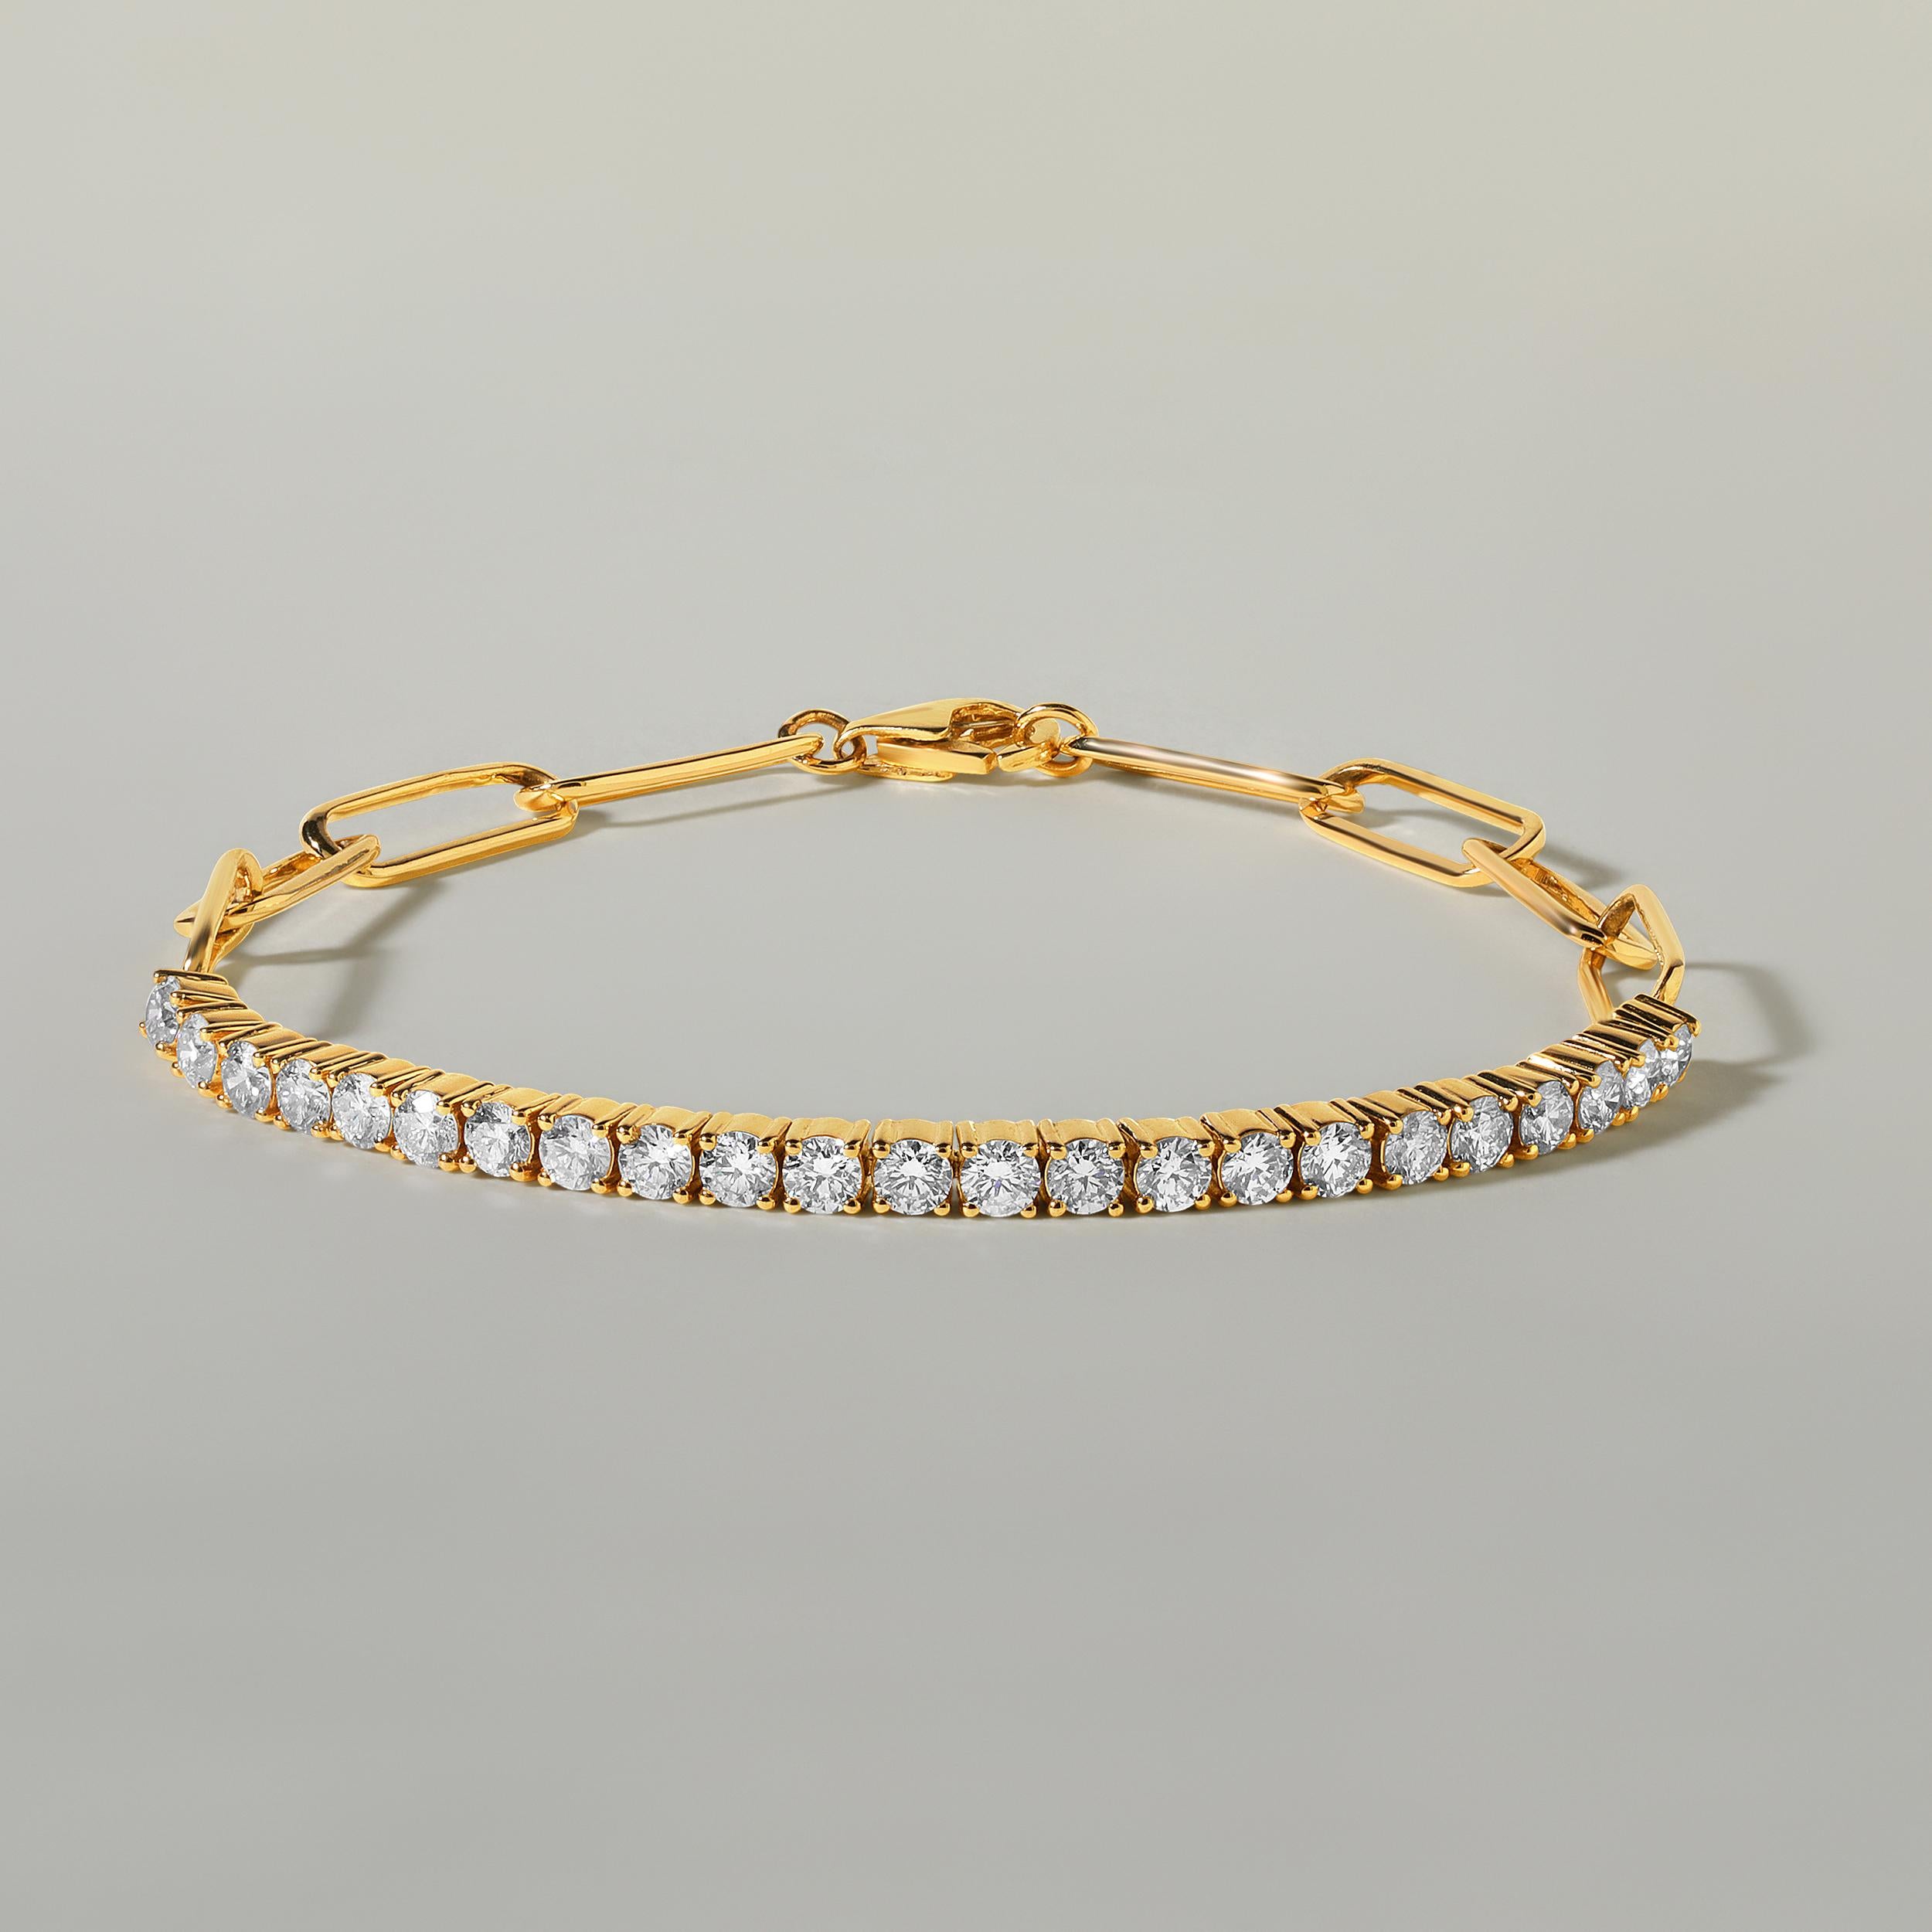 Fabriqué en or jaune 14 carats de 6,93 grammes, le bracelet contient 23 pierres de diamants ronds naturels d'un total de 2,03 carats de couleur G-H et de pureté SI. La longueur du bracelet est de 7 pouces.
Ce bijou sera confectionné par nos artisans